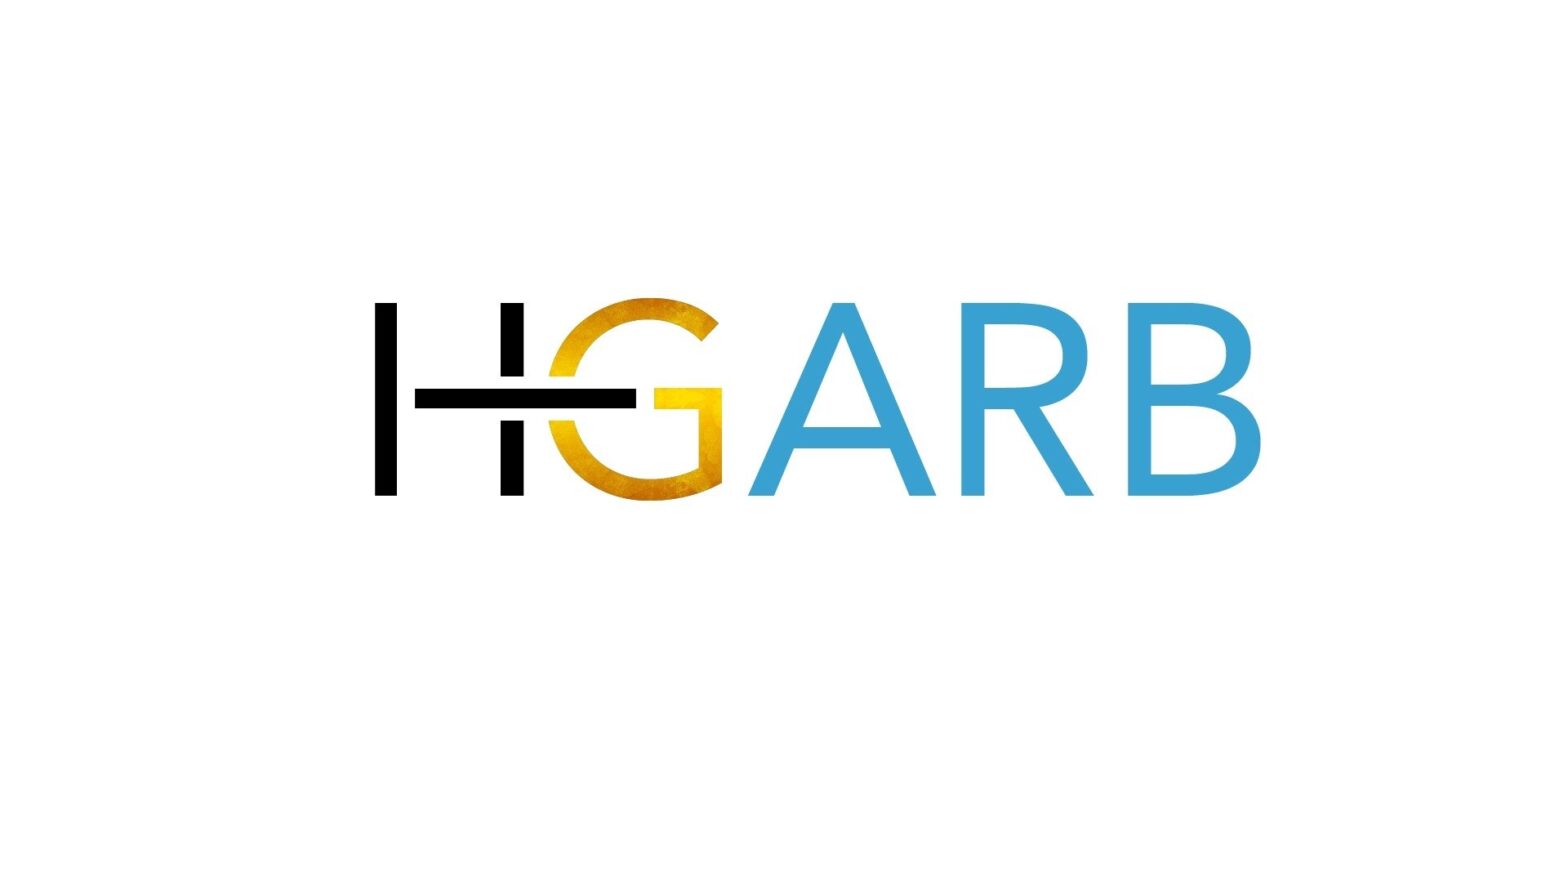 H-Garb Informatix Private Limited